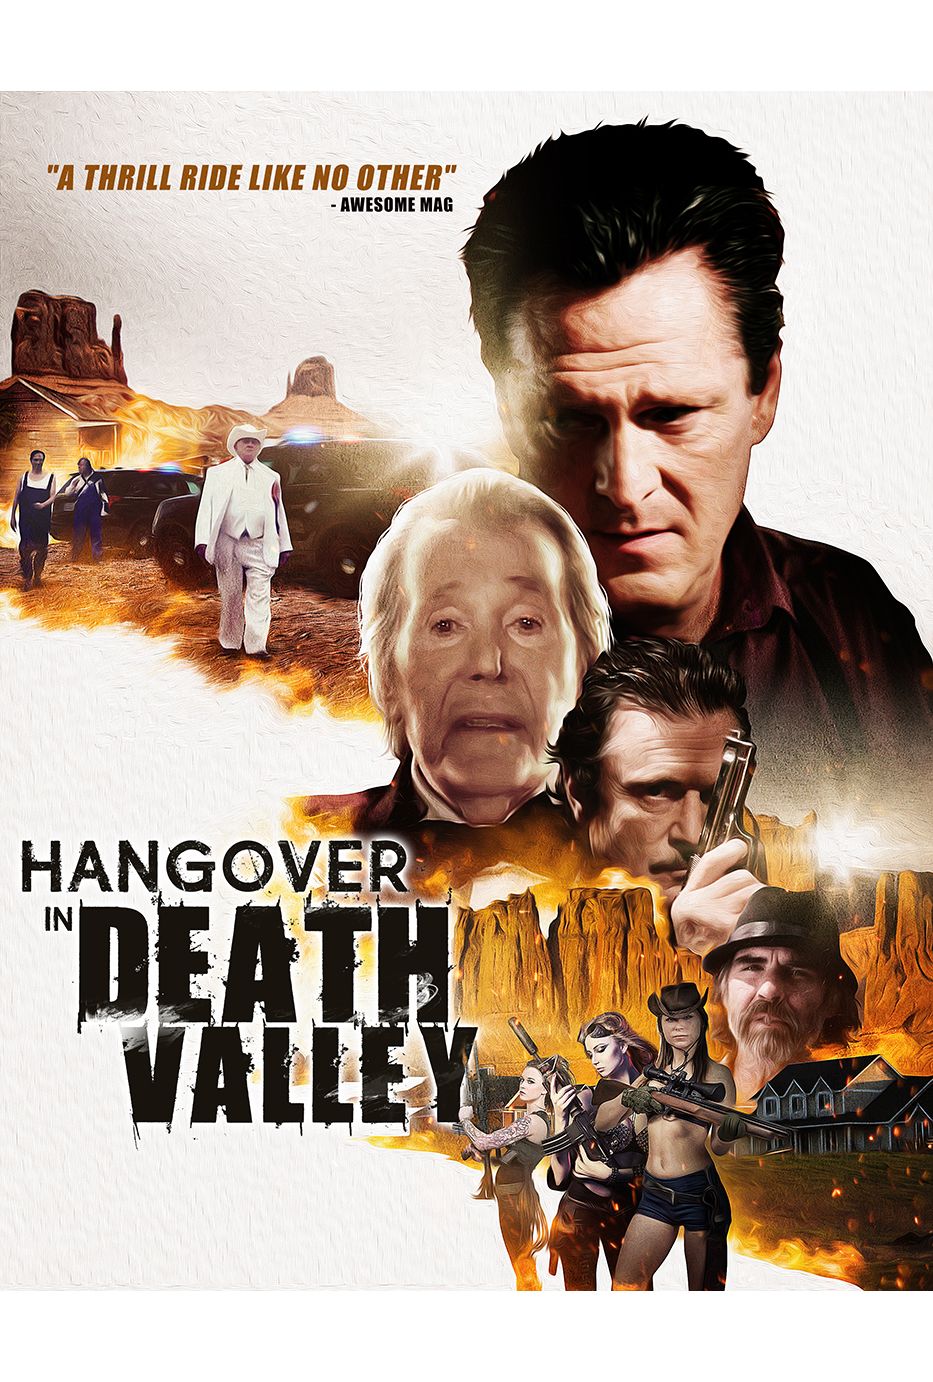 Nonton film Hangover in Death Valley layarkaca21 indoxx1 ganool online streaming terbaru